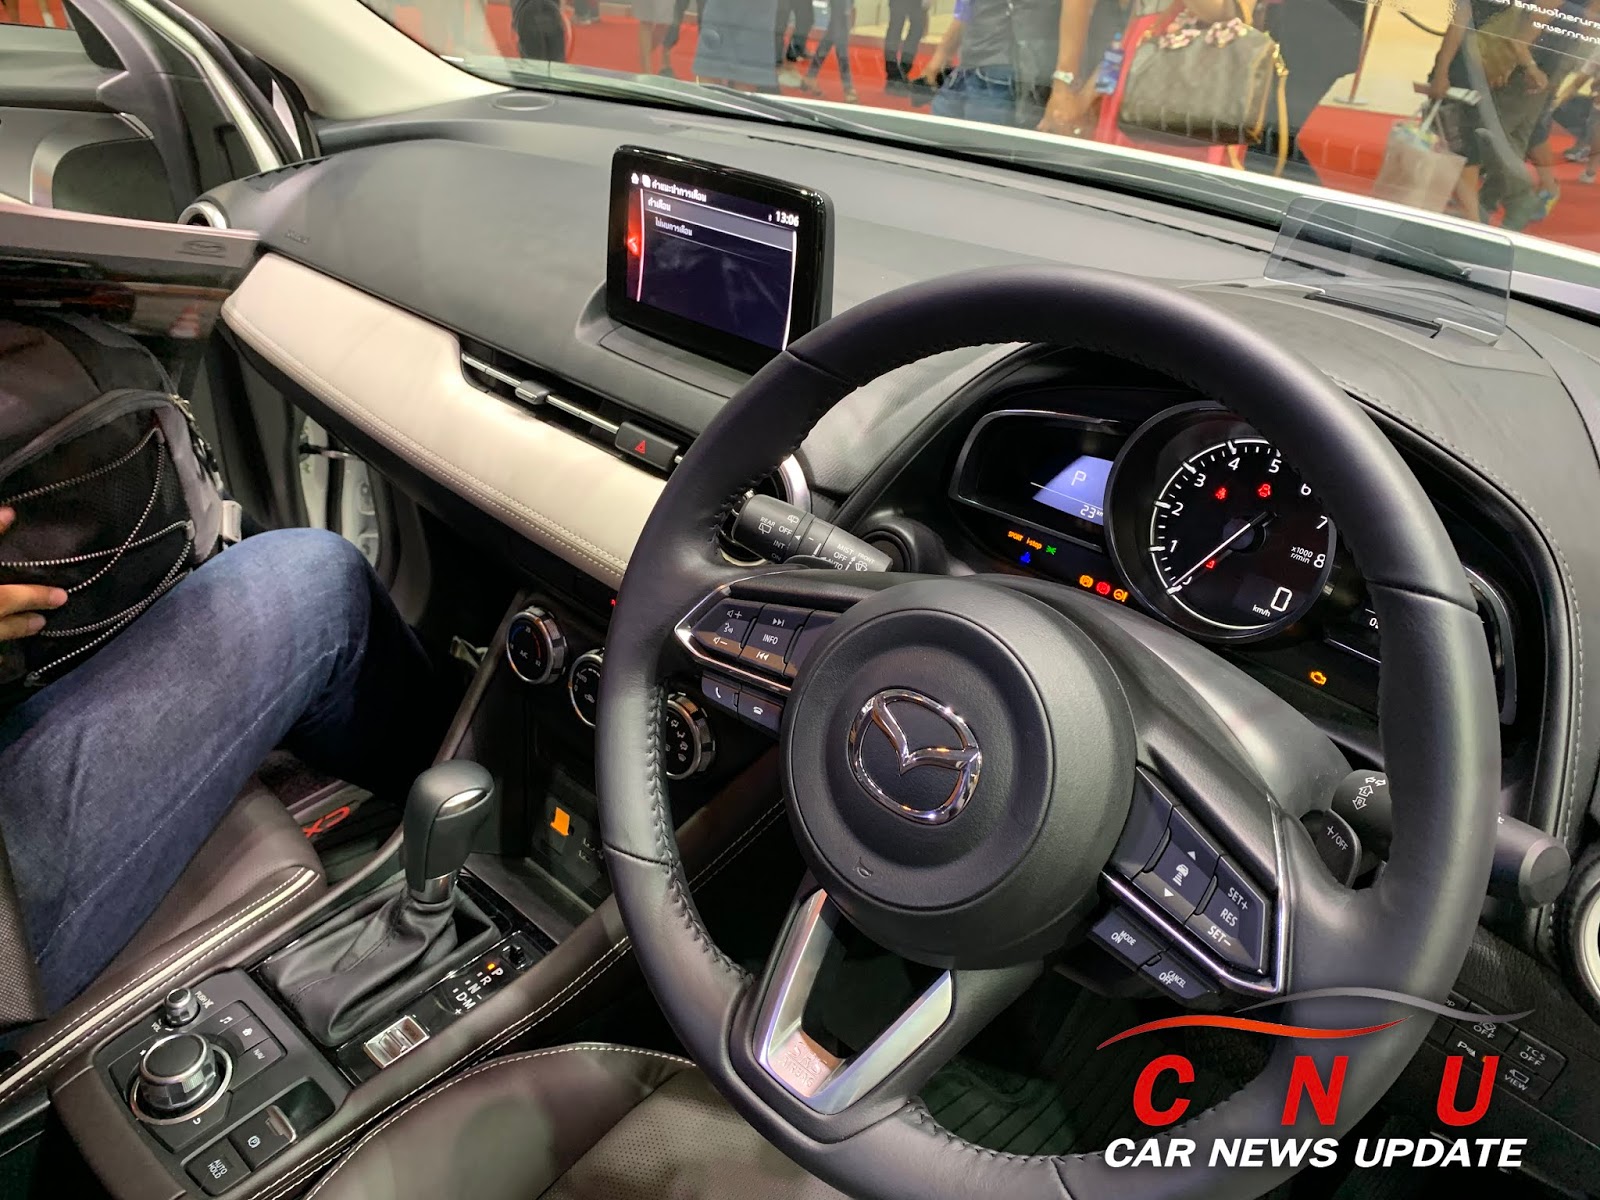 Car News Update: ชม Mazda CX-3 EXCLUSIVE MODS รุ่นตกแต่งพิเศษเพิ่มเติม